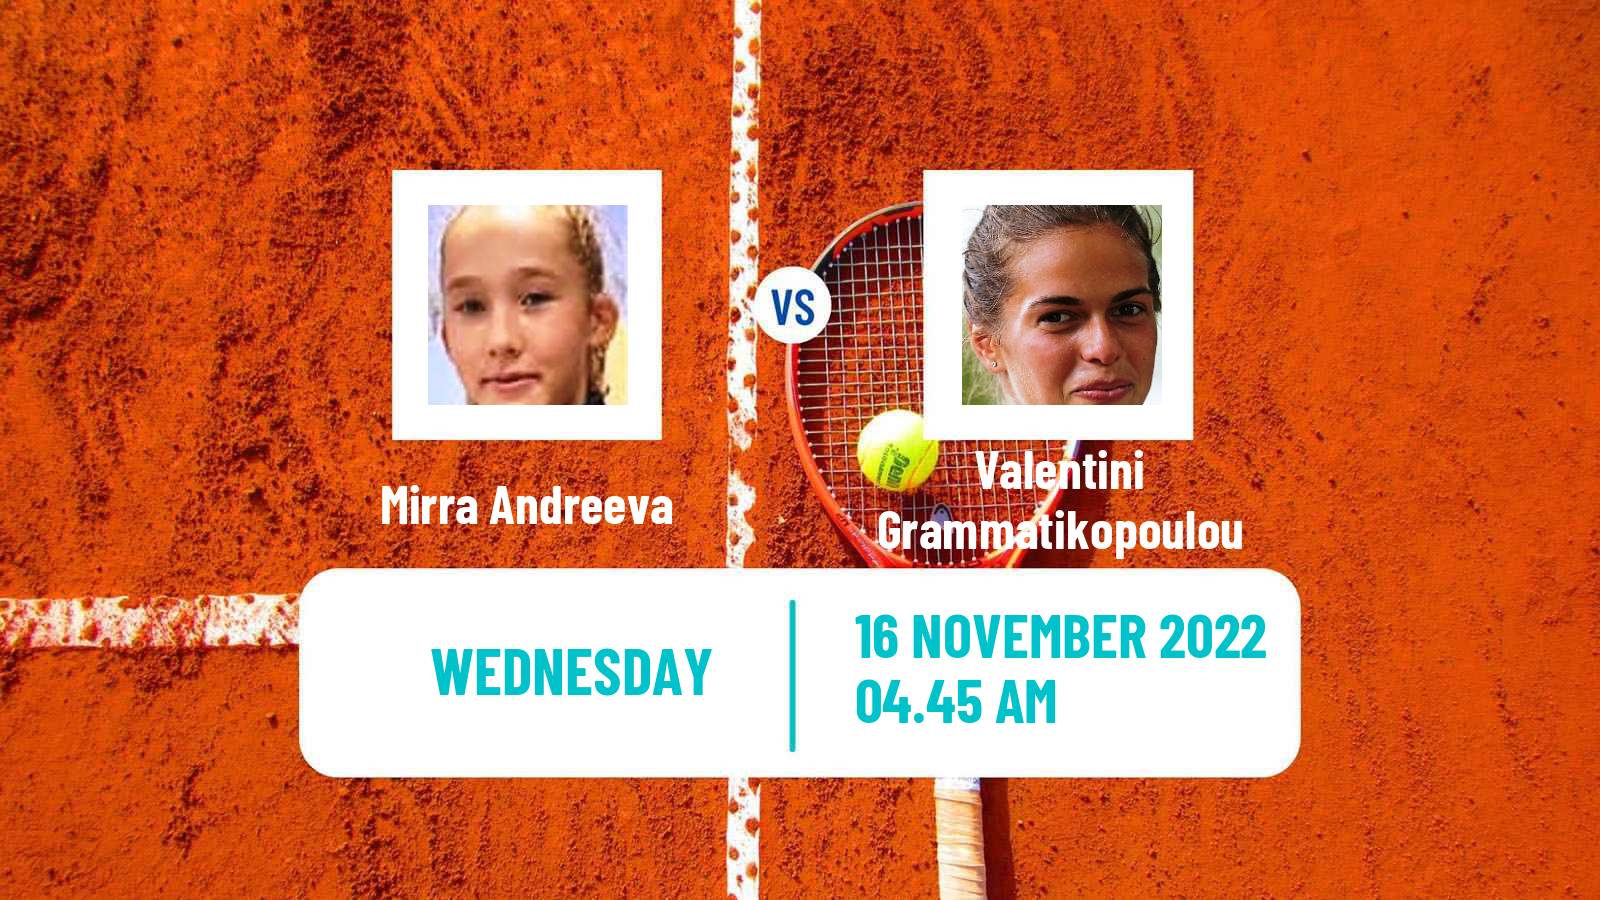 Tennis ITF Tournaments Mirra Andreeva - Valentini Grammatikopoulou